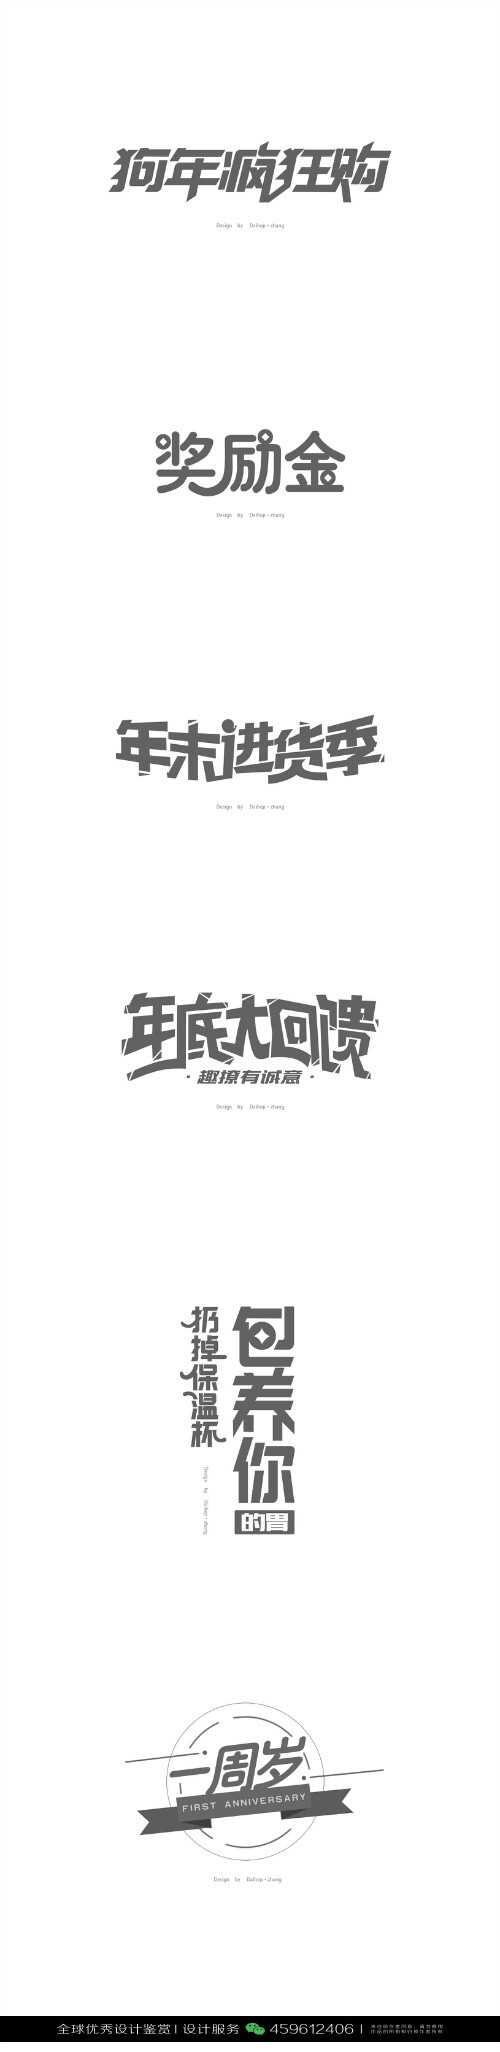 字体设计汉字中文优秀logo设计标志品牌设计作品 1538 堆糖 美图壁纸兴趣社区